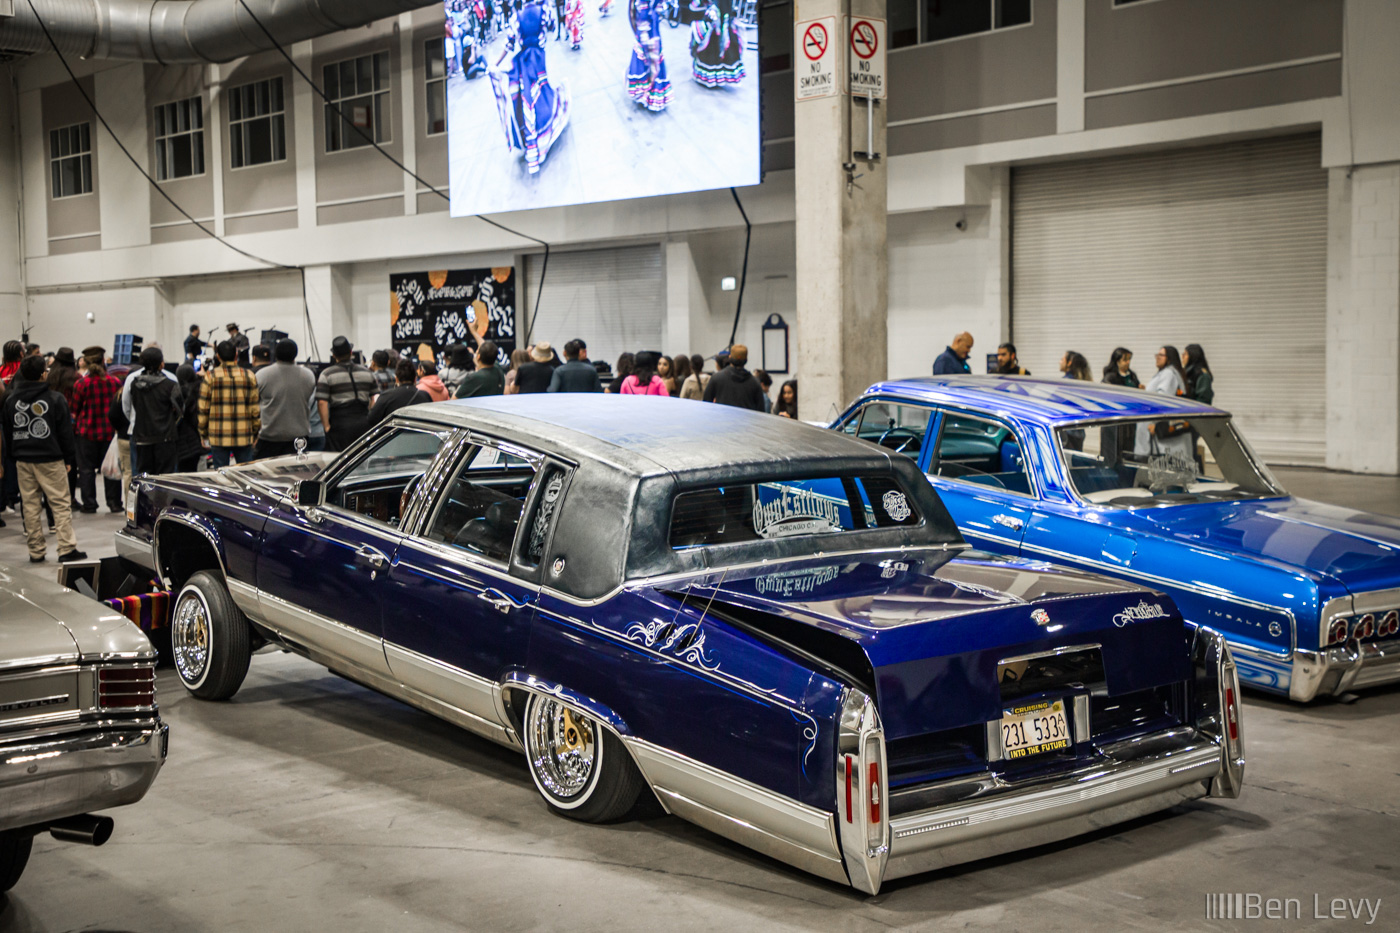 Blue Cadillac with Own Estilows Car Club